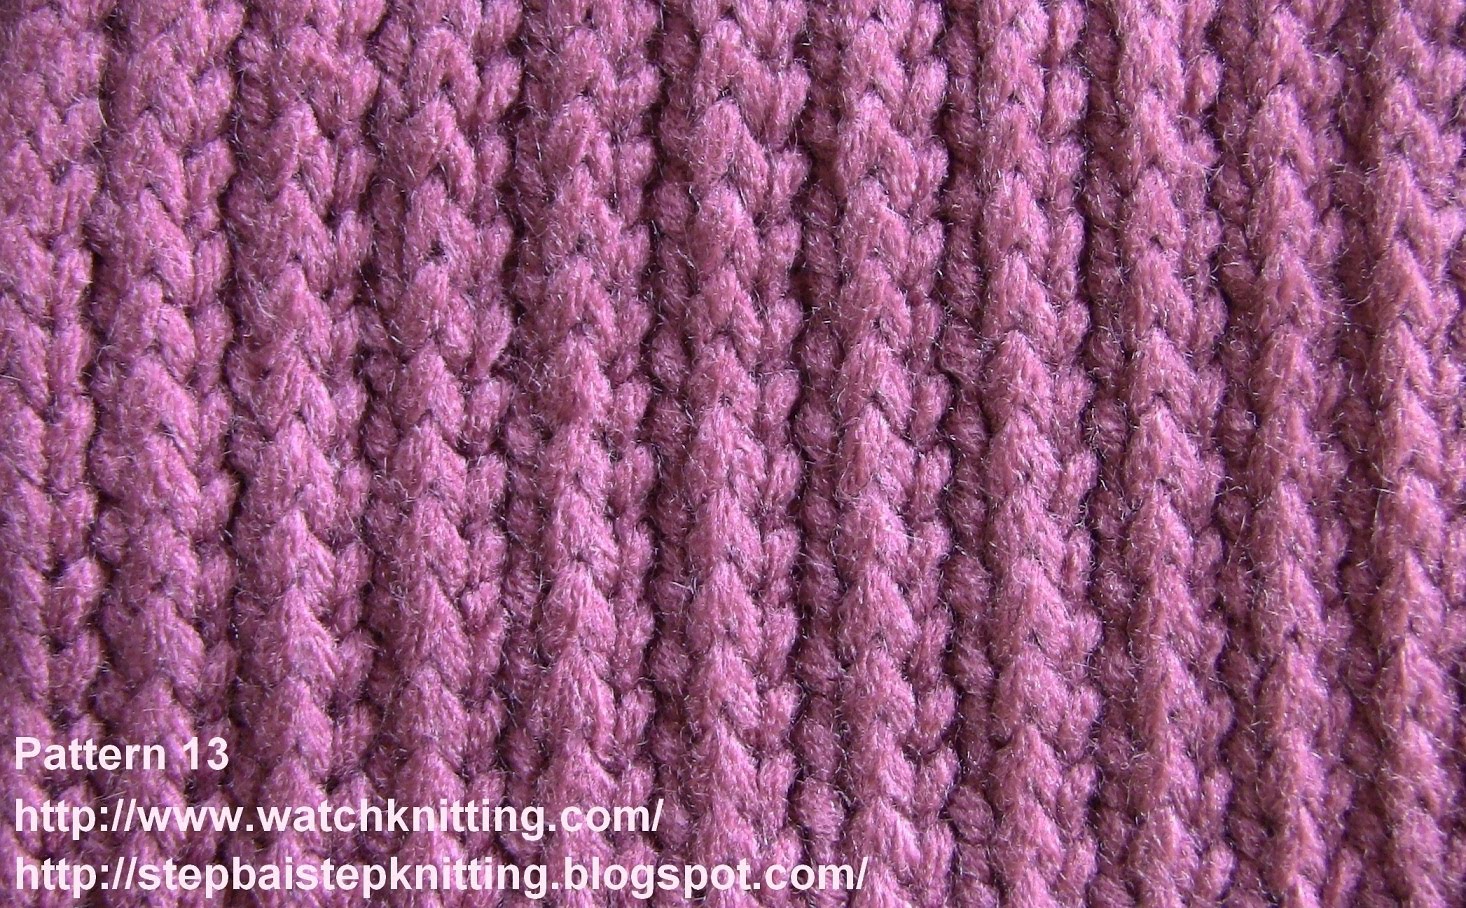 simple knitting patterns (stripe stitch) - free knitting tutorial - watch knitting - pattern 13 - isgbqnv